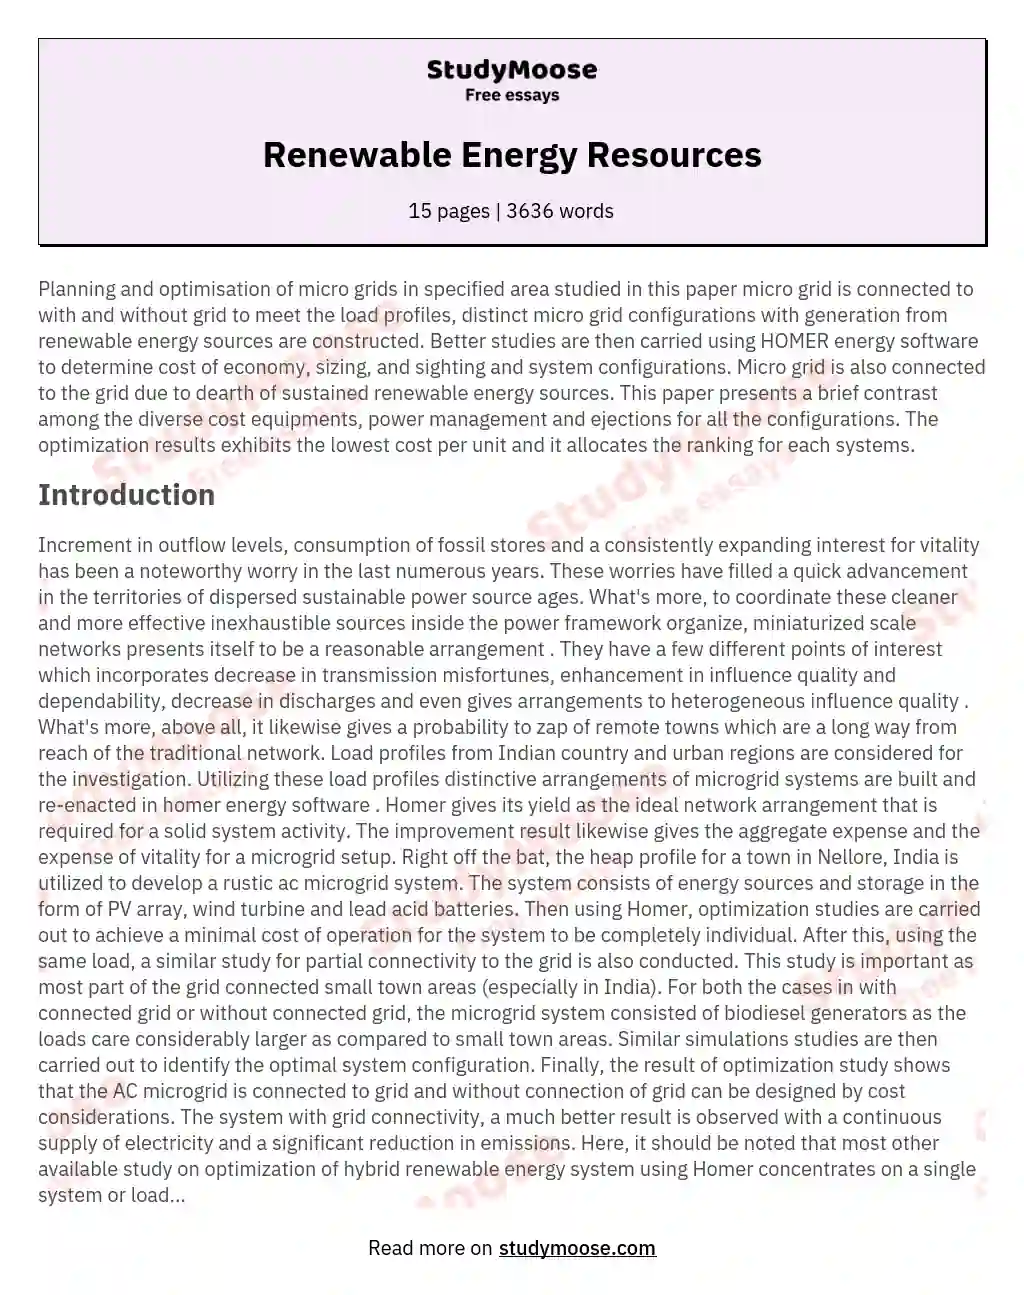 Renewable Energy Resources essay